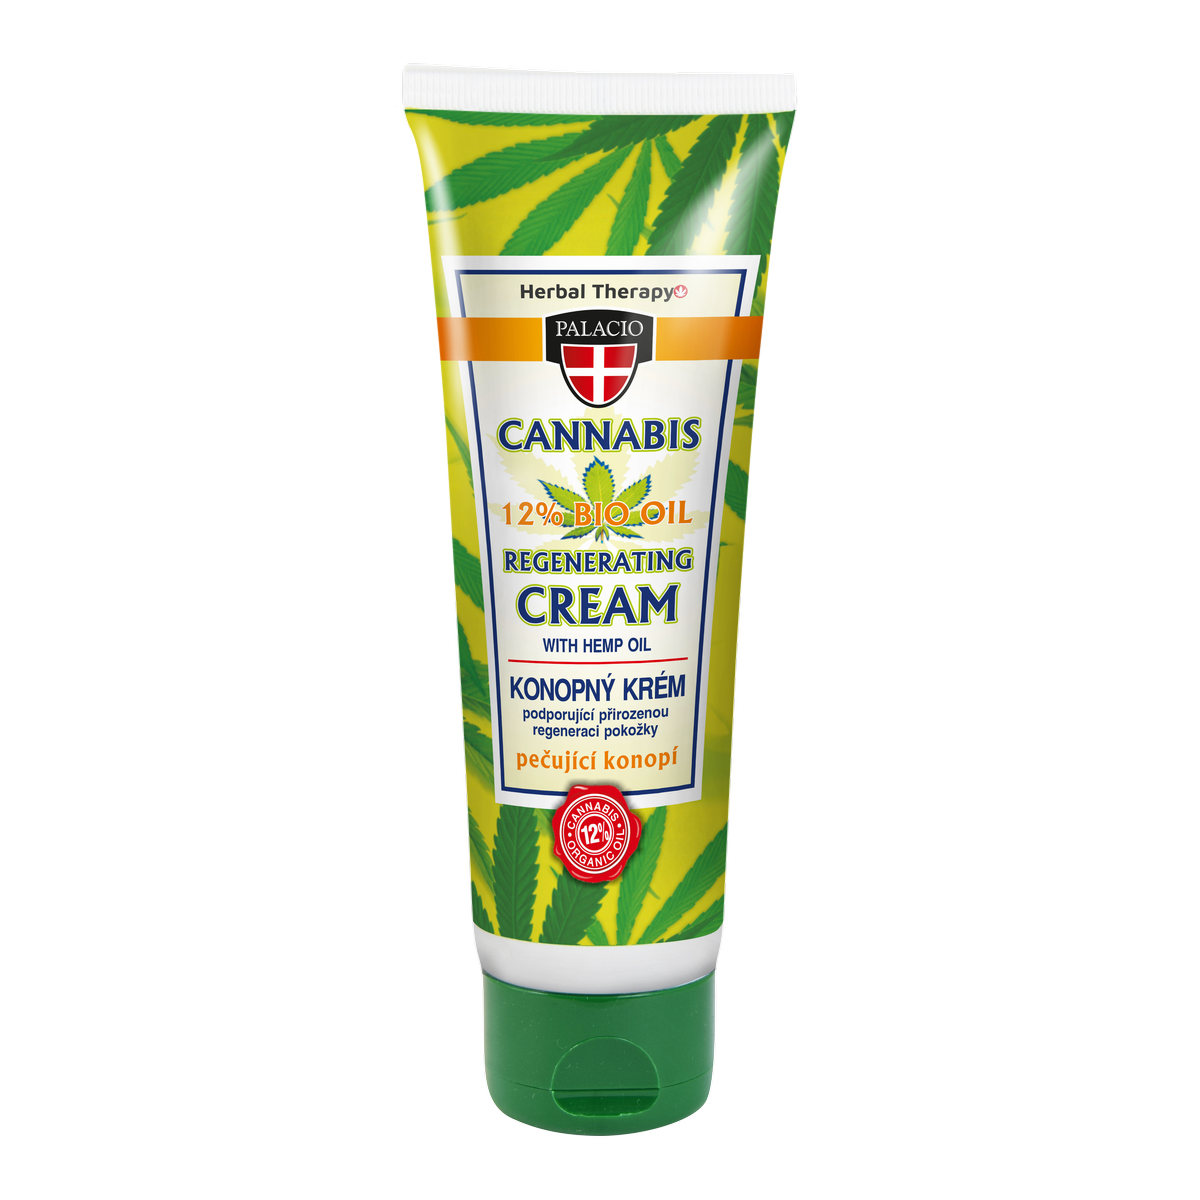 CANNABIS Hand Cream 125ml P0420 ENG WEB 107